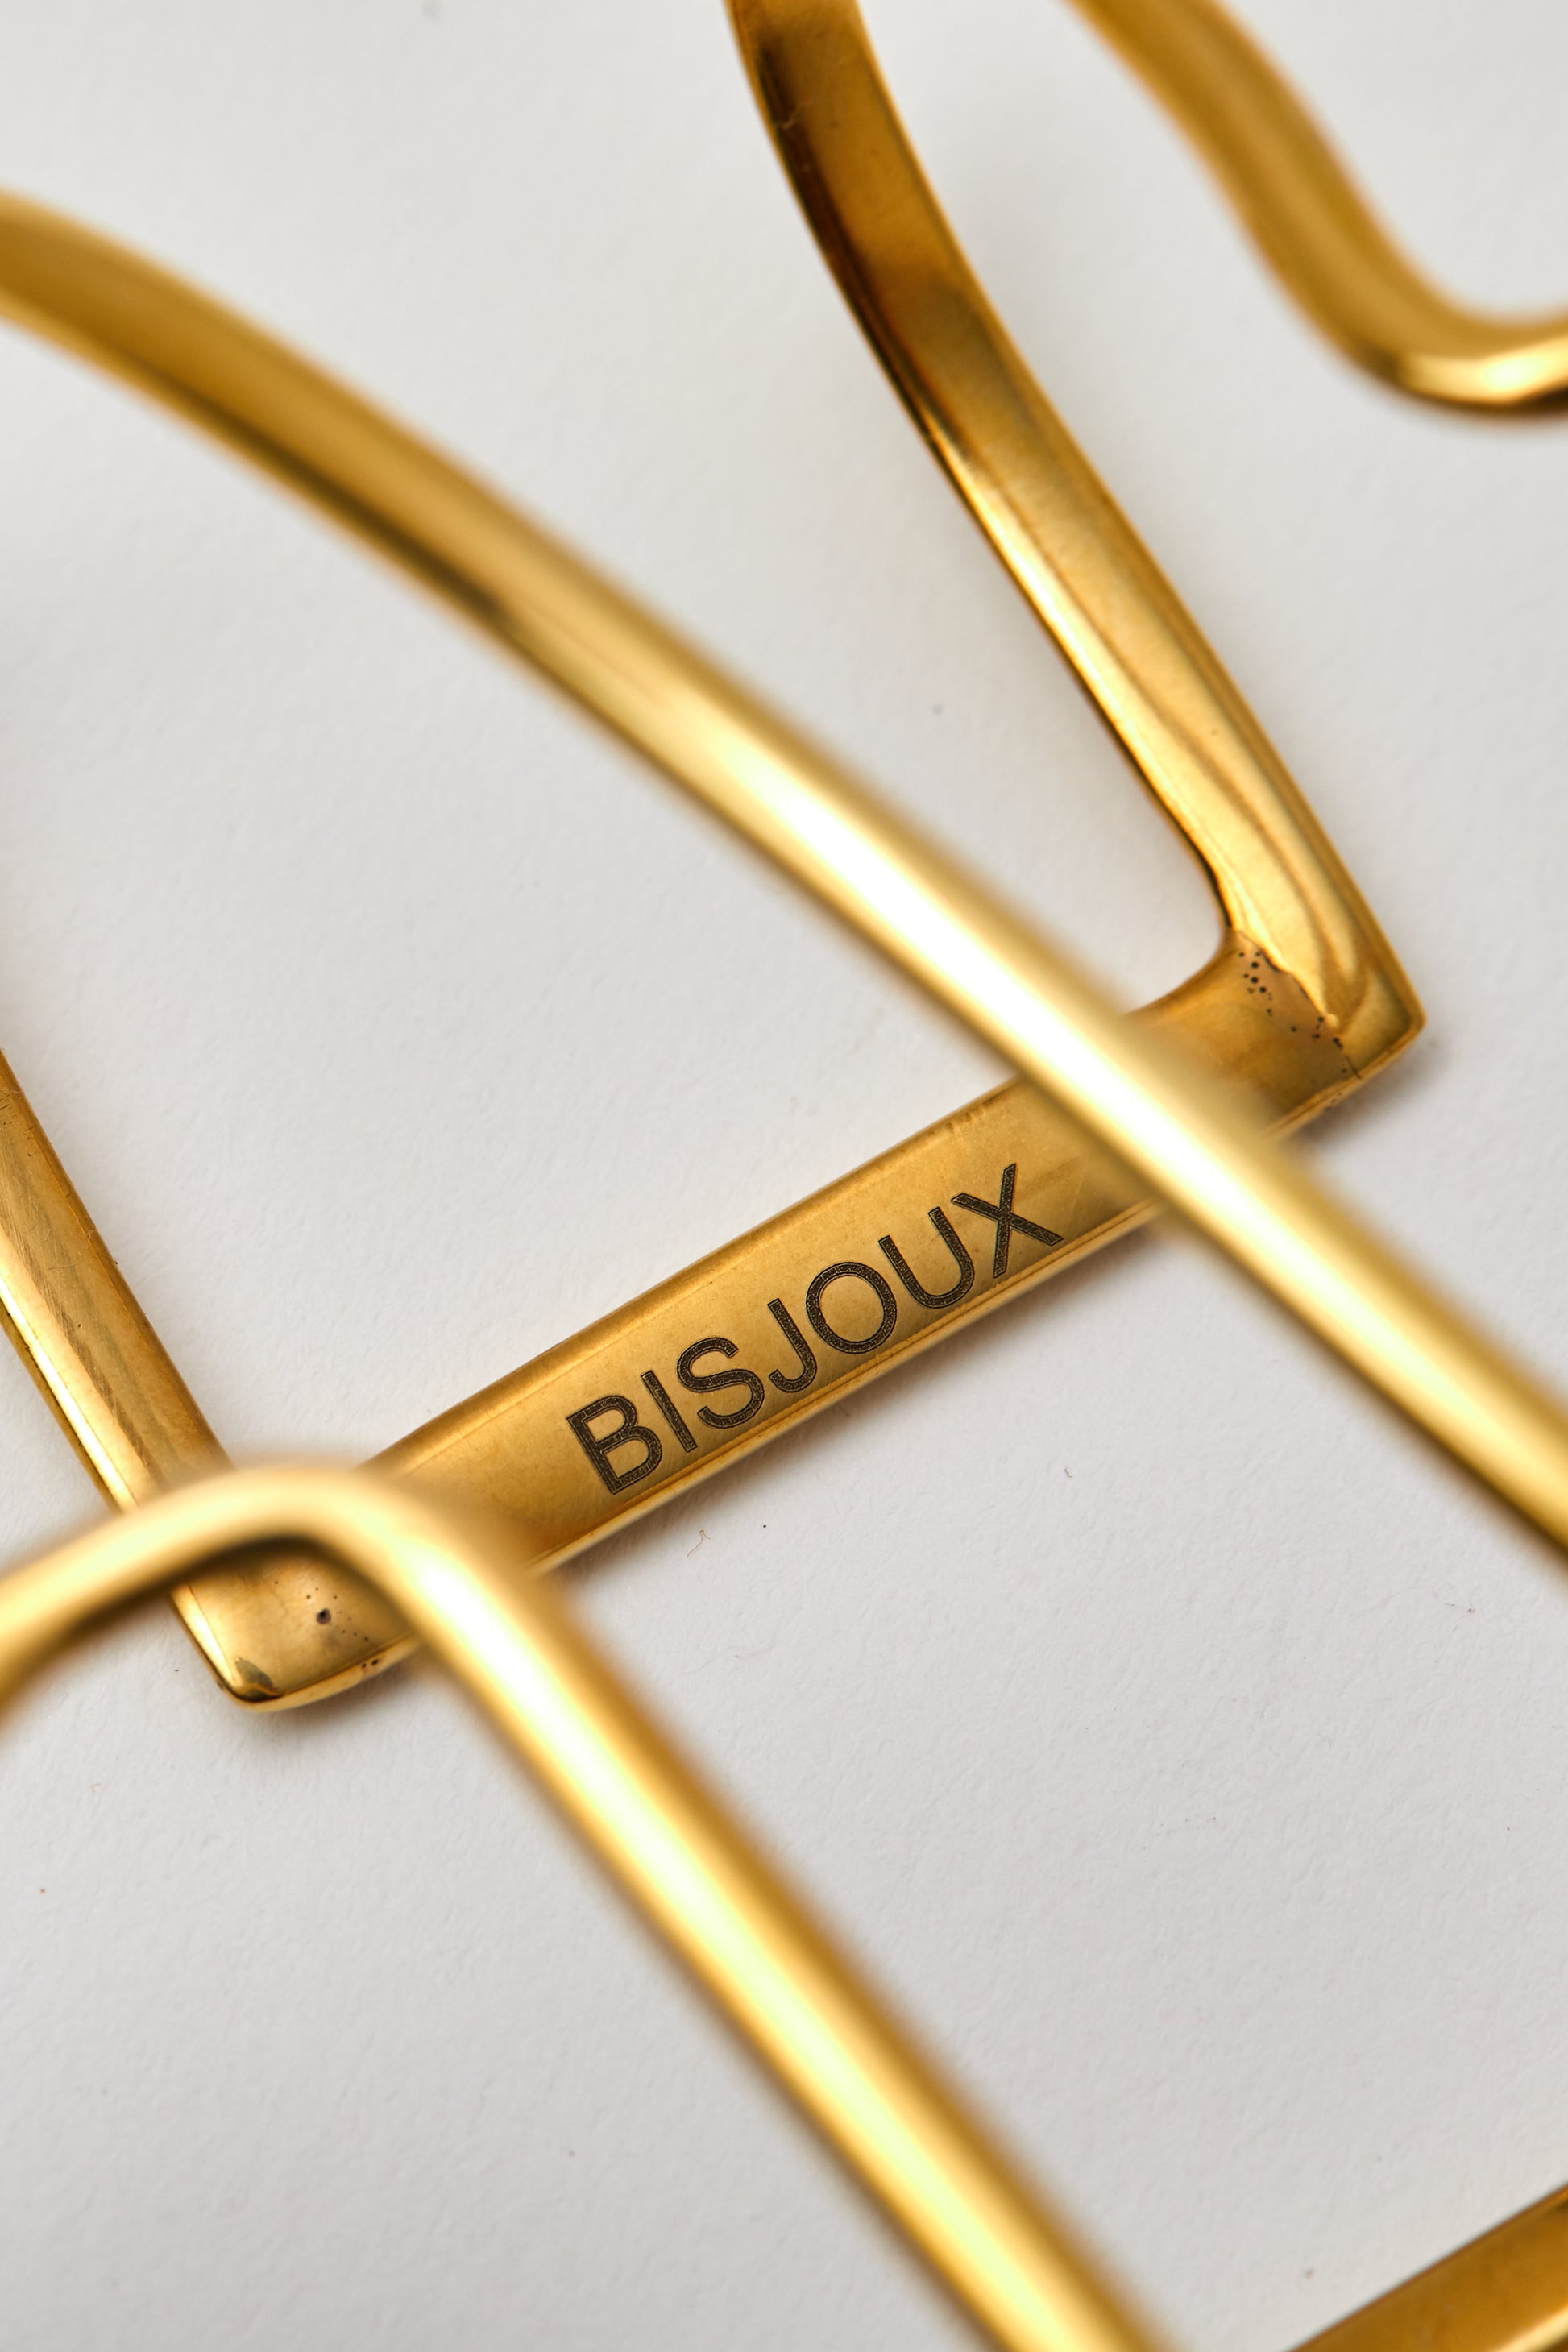 Bisjoux-Brass-snake-serpent-bangle-palmlet